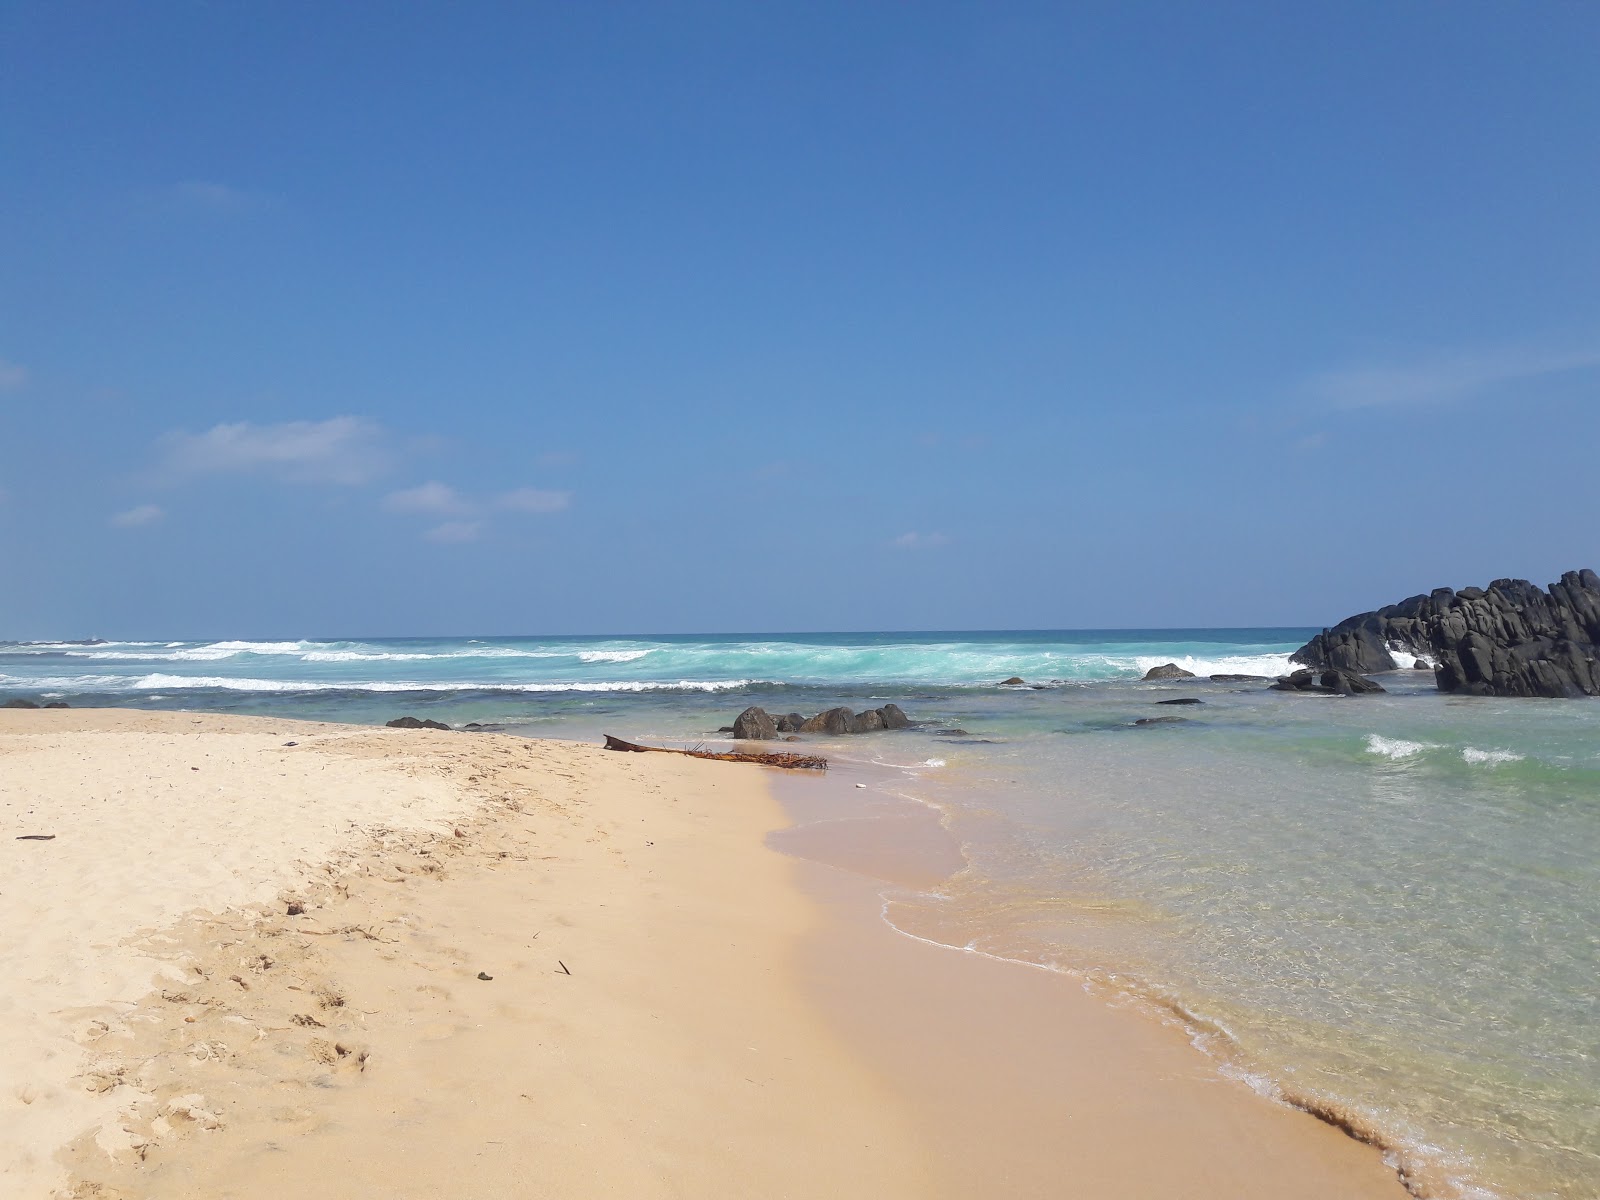 Fotografija Dalawella Beach priljubljeno mesto med poznavalci sprostitve